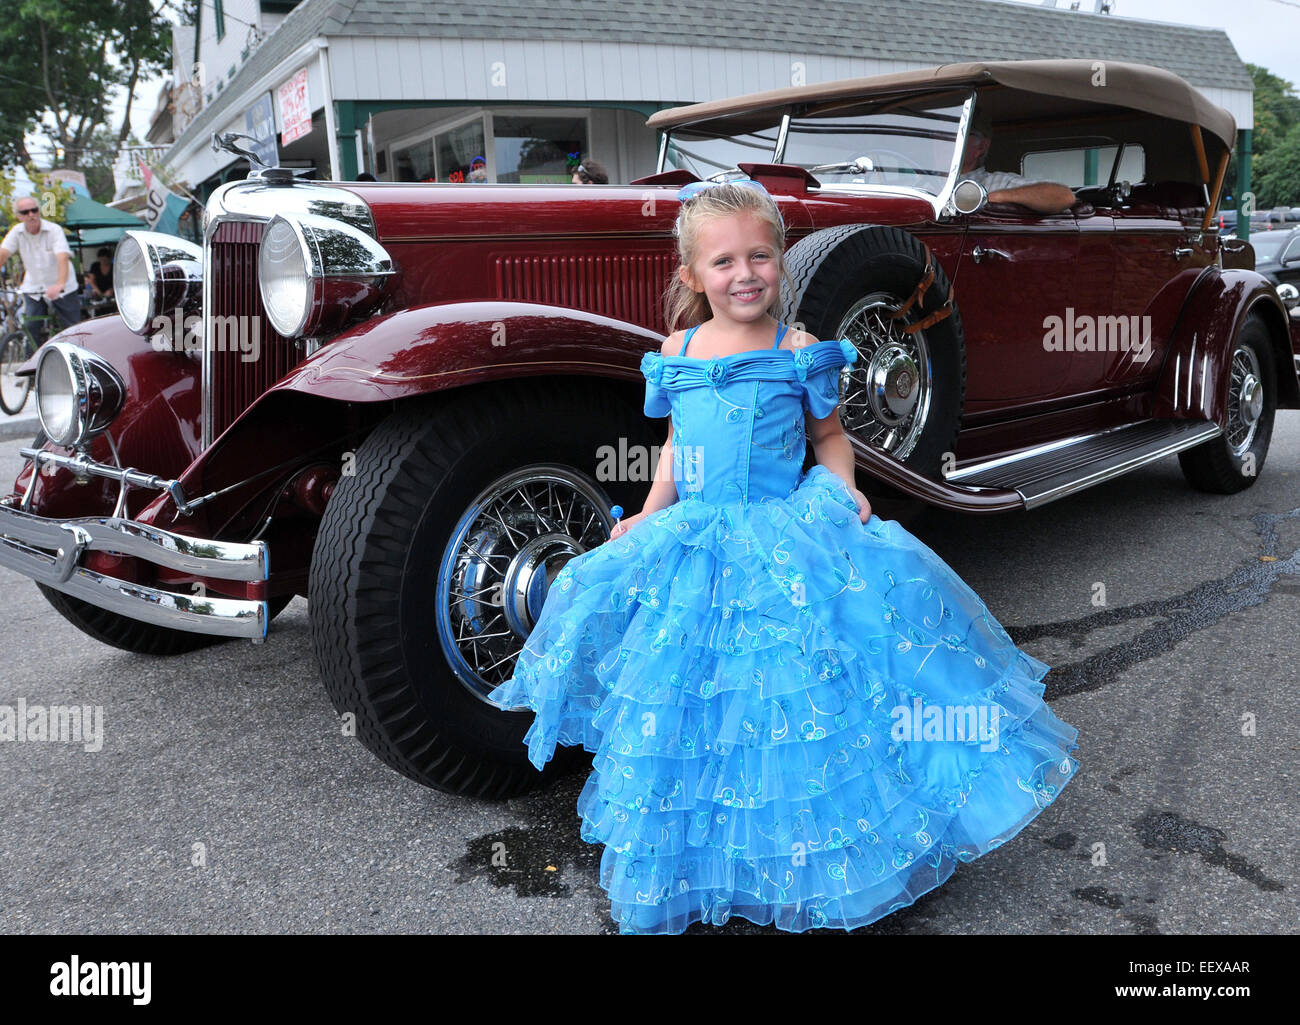 Mia Simoncini, 7, de Clinton pose pour une photo après une marche dans le défilé au cours de la 350e anniversaire de la ville de Clinton festival. Simoncini a été nommé 'Little Miss Bluefish,' pour le défilé. Banque D'Images